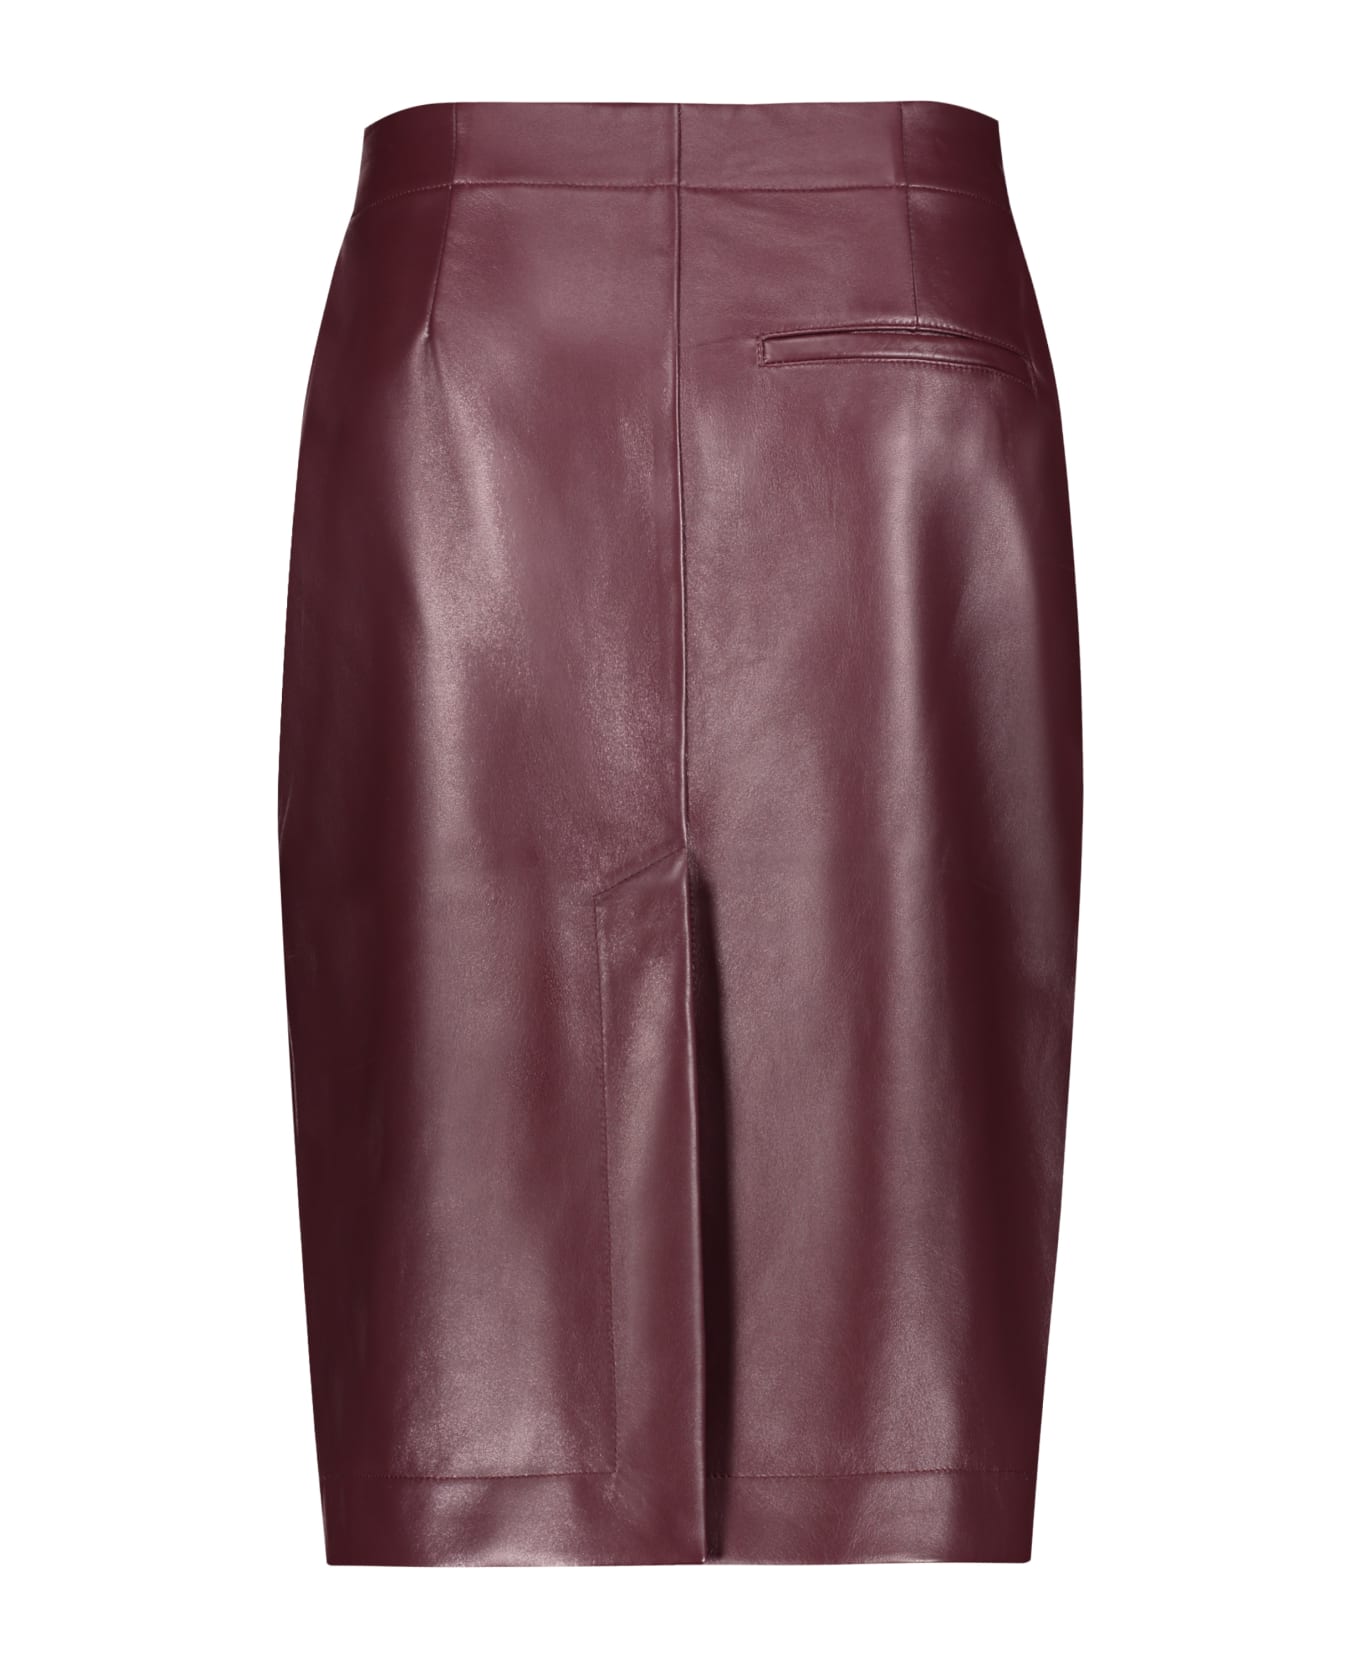 Bottega Veneta Leather Skirt - Burgundy スカート